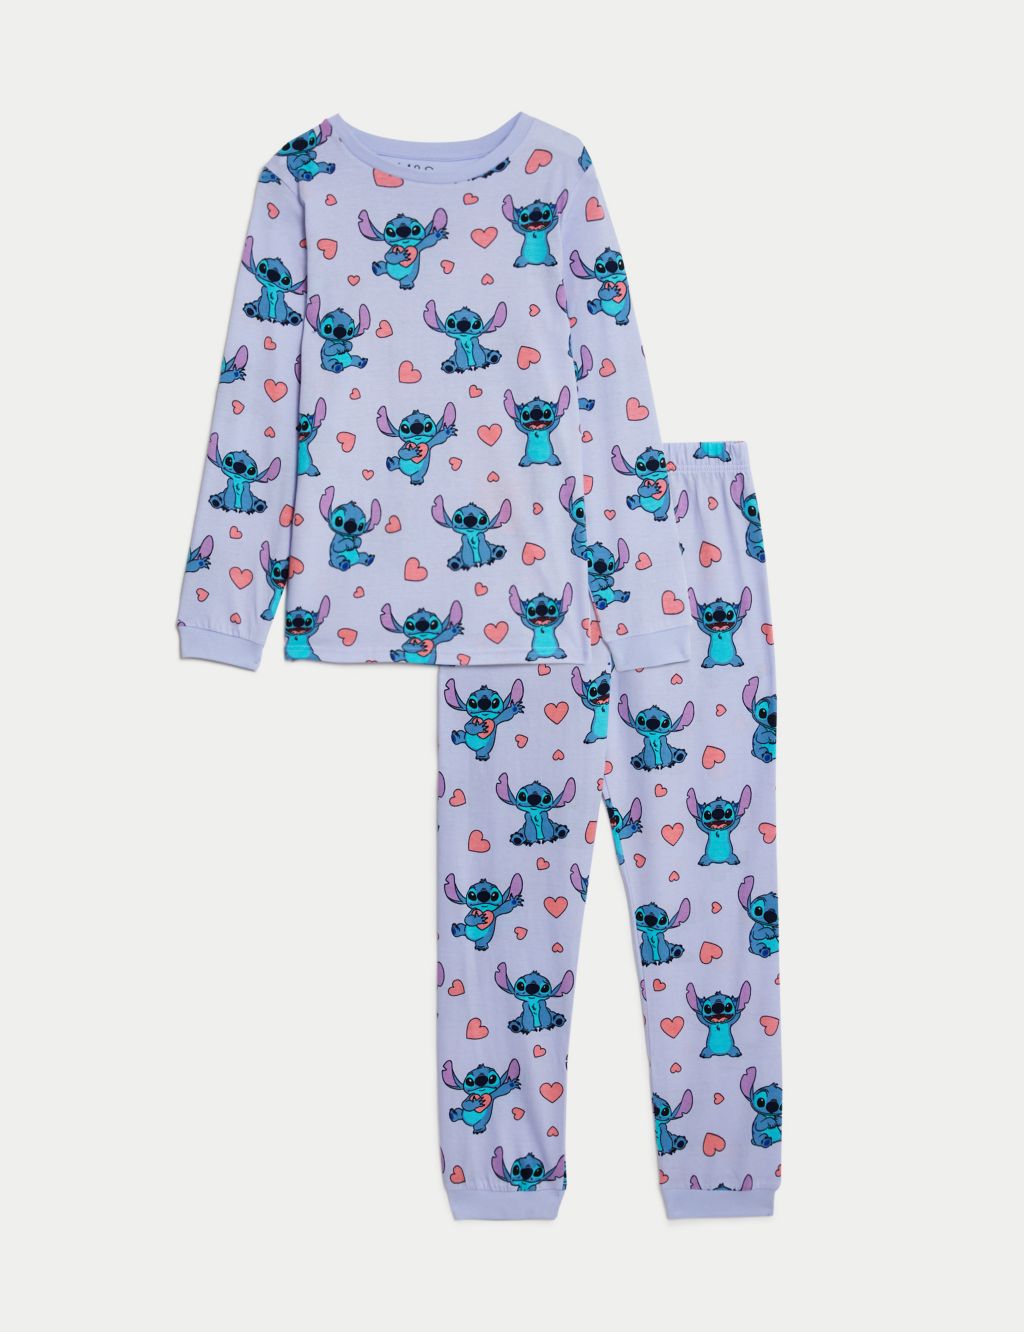 7-14 Years Lilo Stitch Kids Pajamas Set Long Sleeve T-shirt Pants